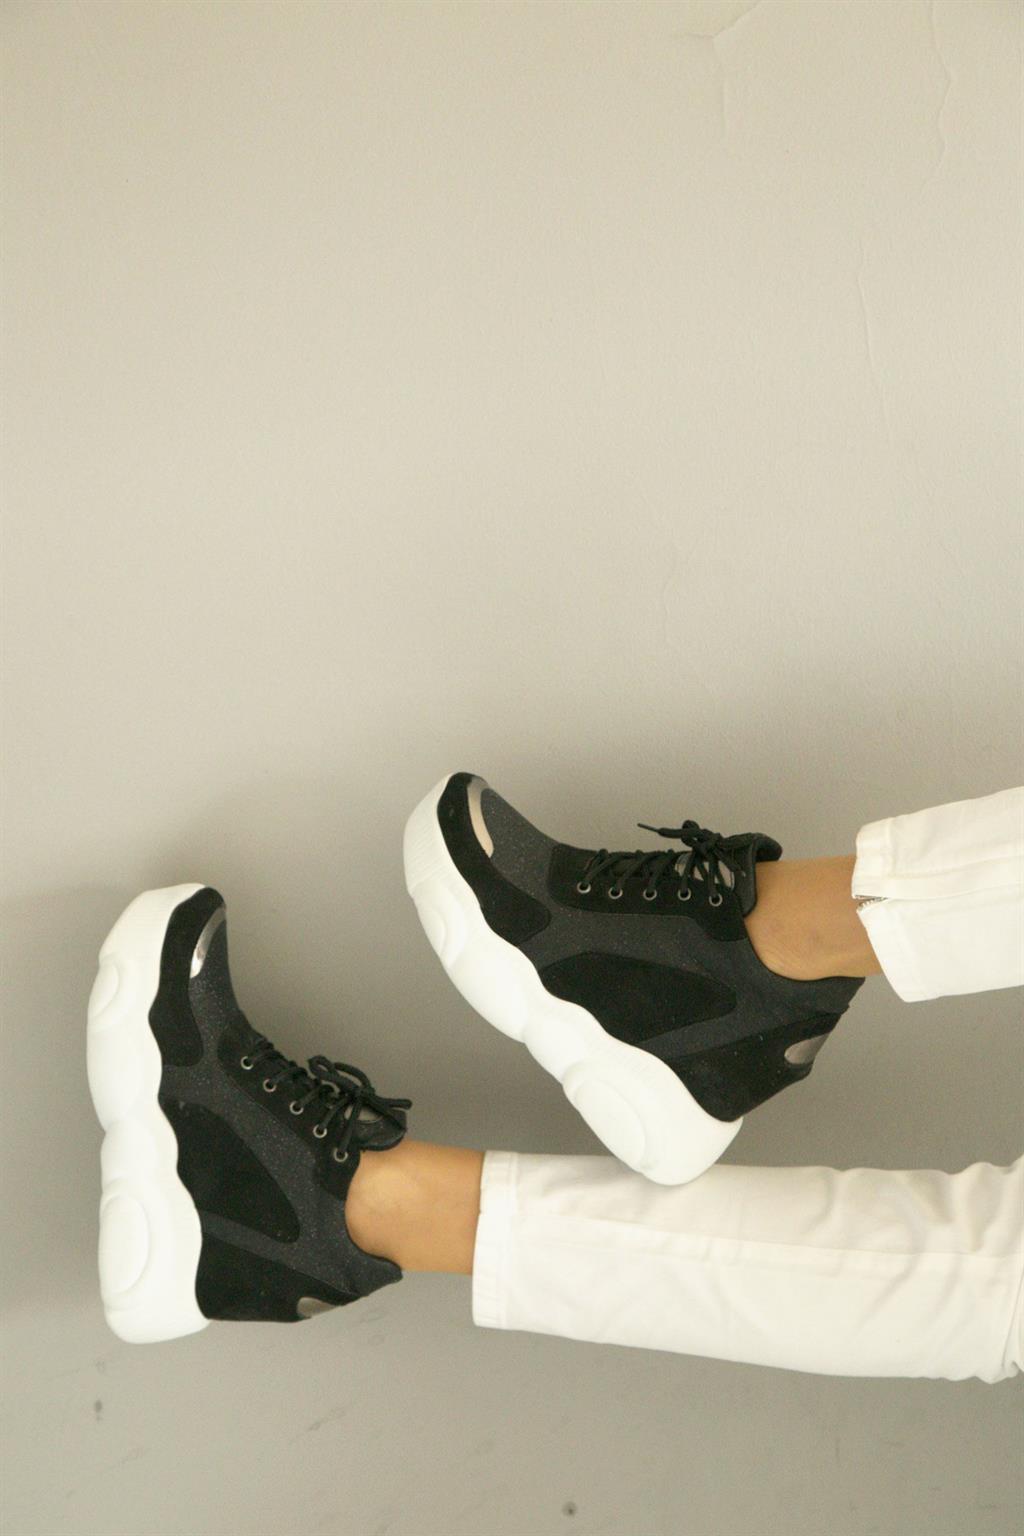 SHOETEK Alessio Kadın Sneakers Bağcıklı Dolgu Topuk Spor Ayakkabı Siyah  Süet Simli